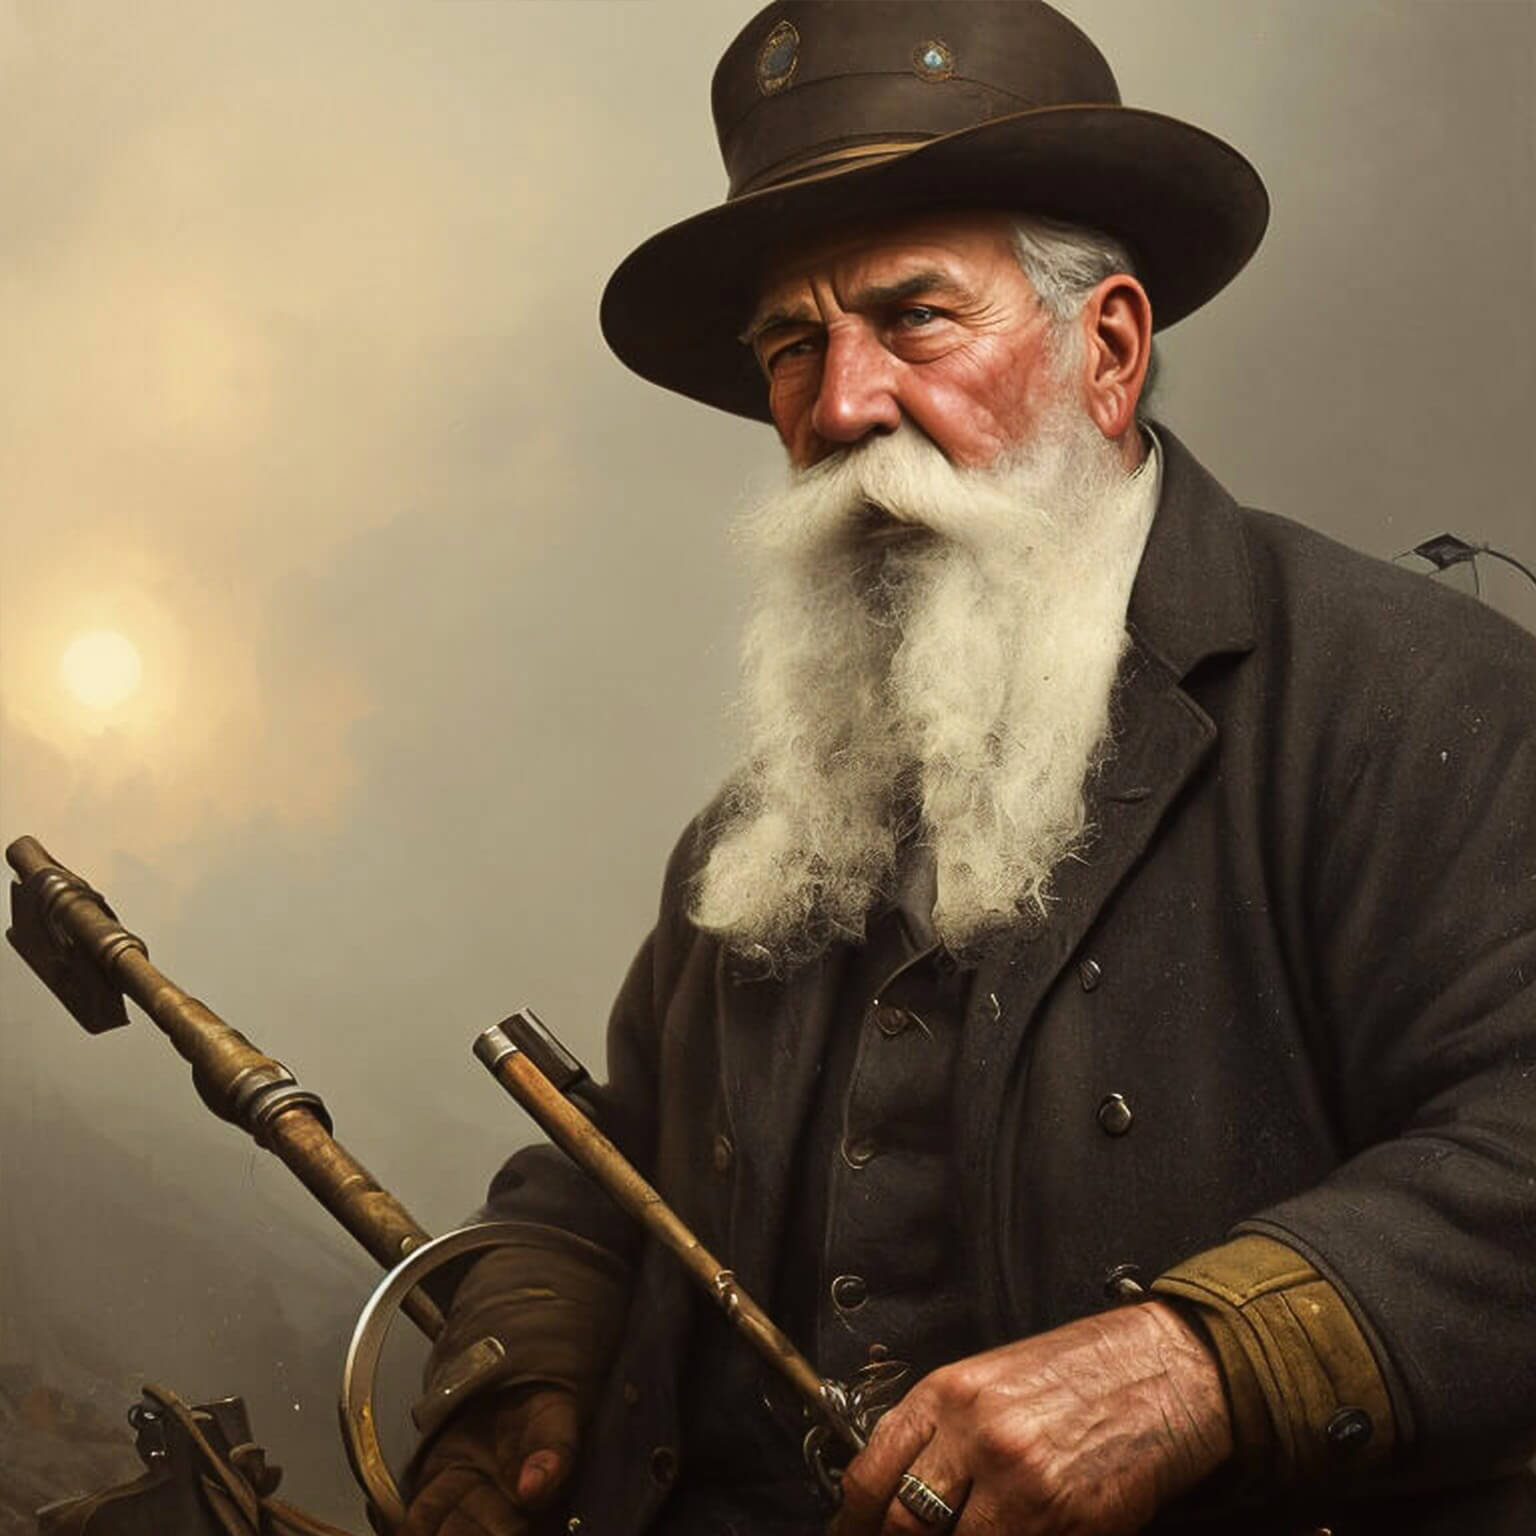 Ein KI Bild von einem älteren Kohle Arbeiter mit Hut und langem Bart